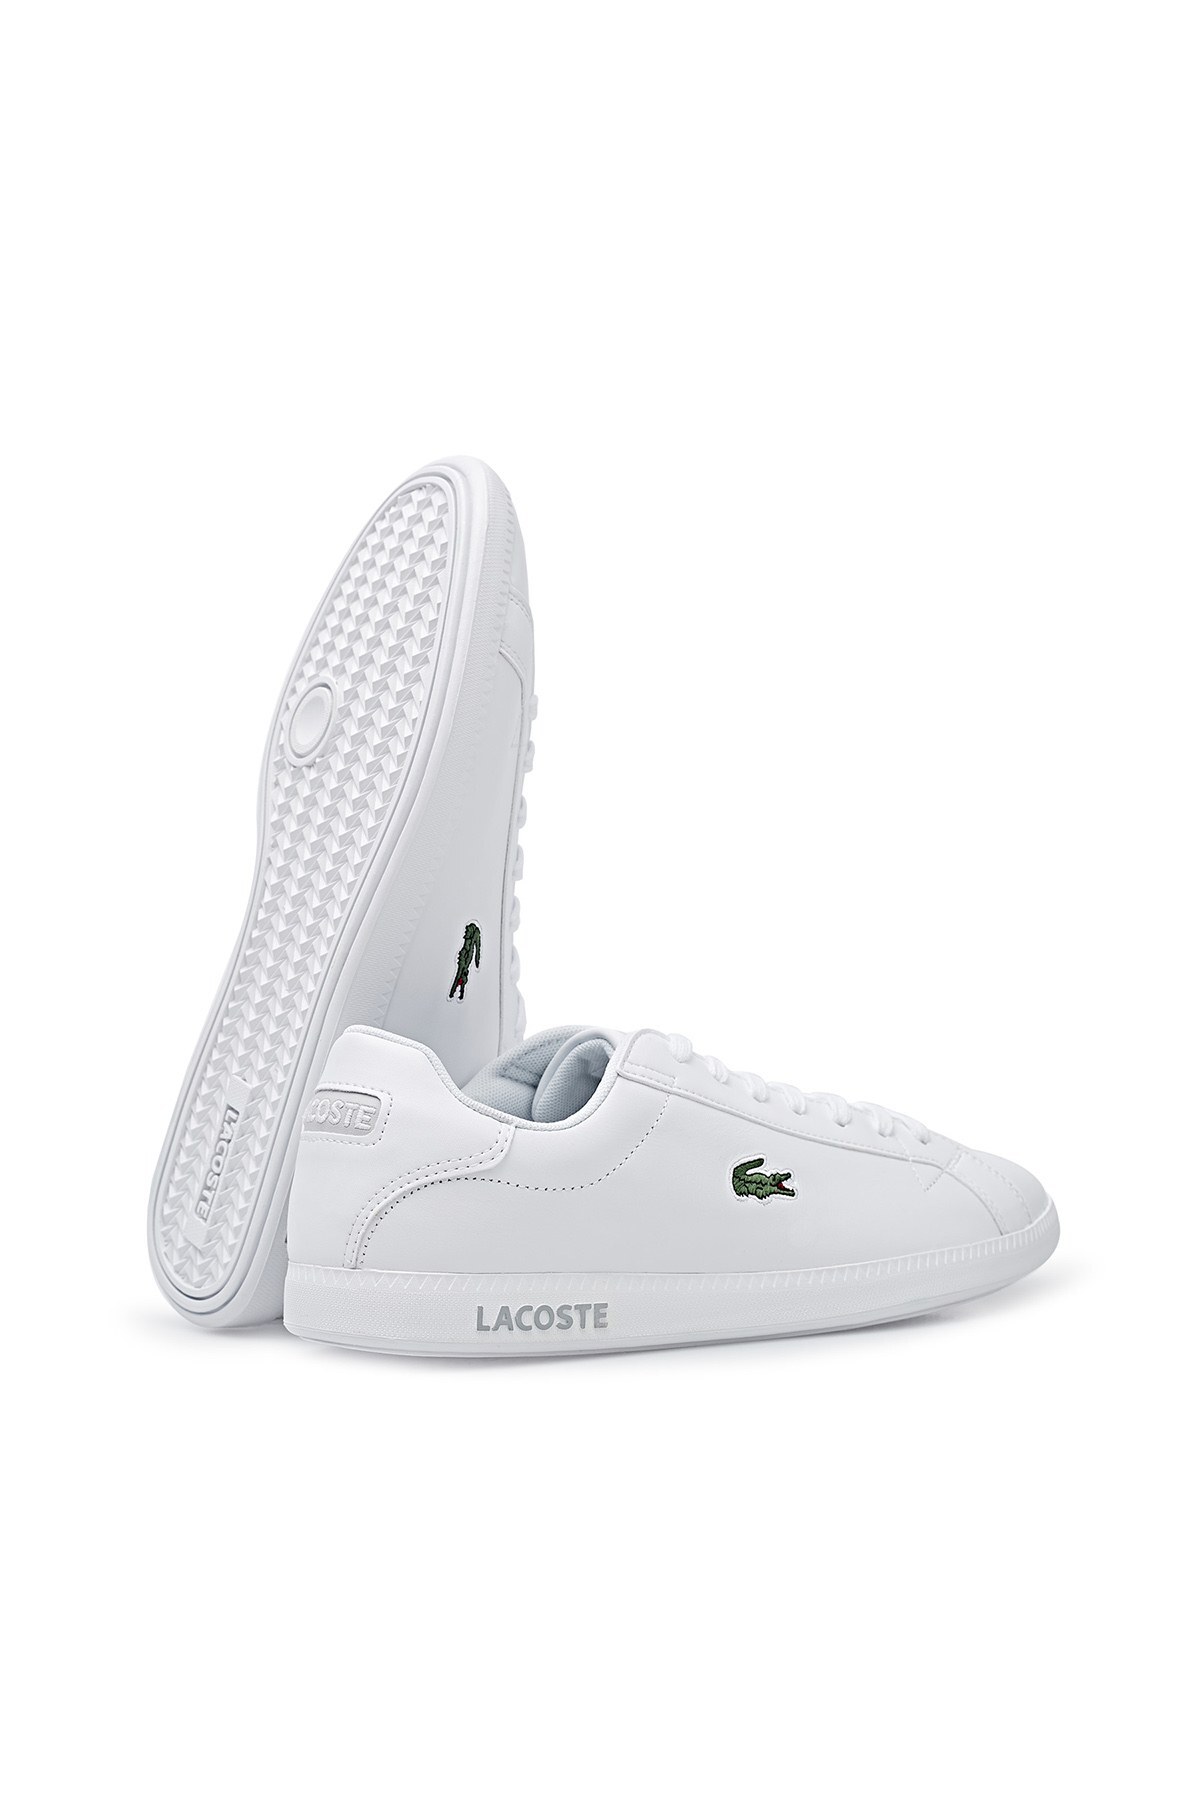 Lacoste Graduate Deri Sneaker Erkek Ayakkabı 7-41SMA001221G